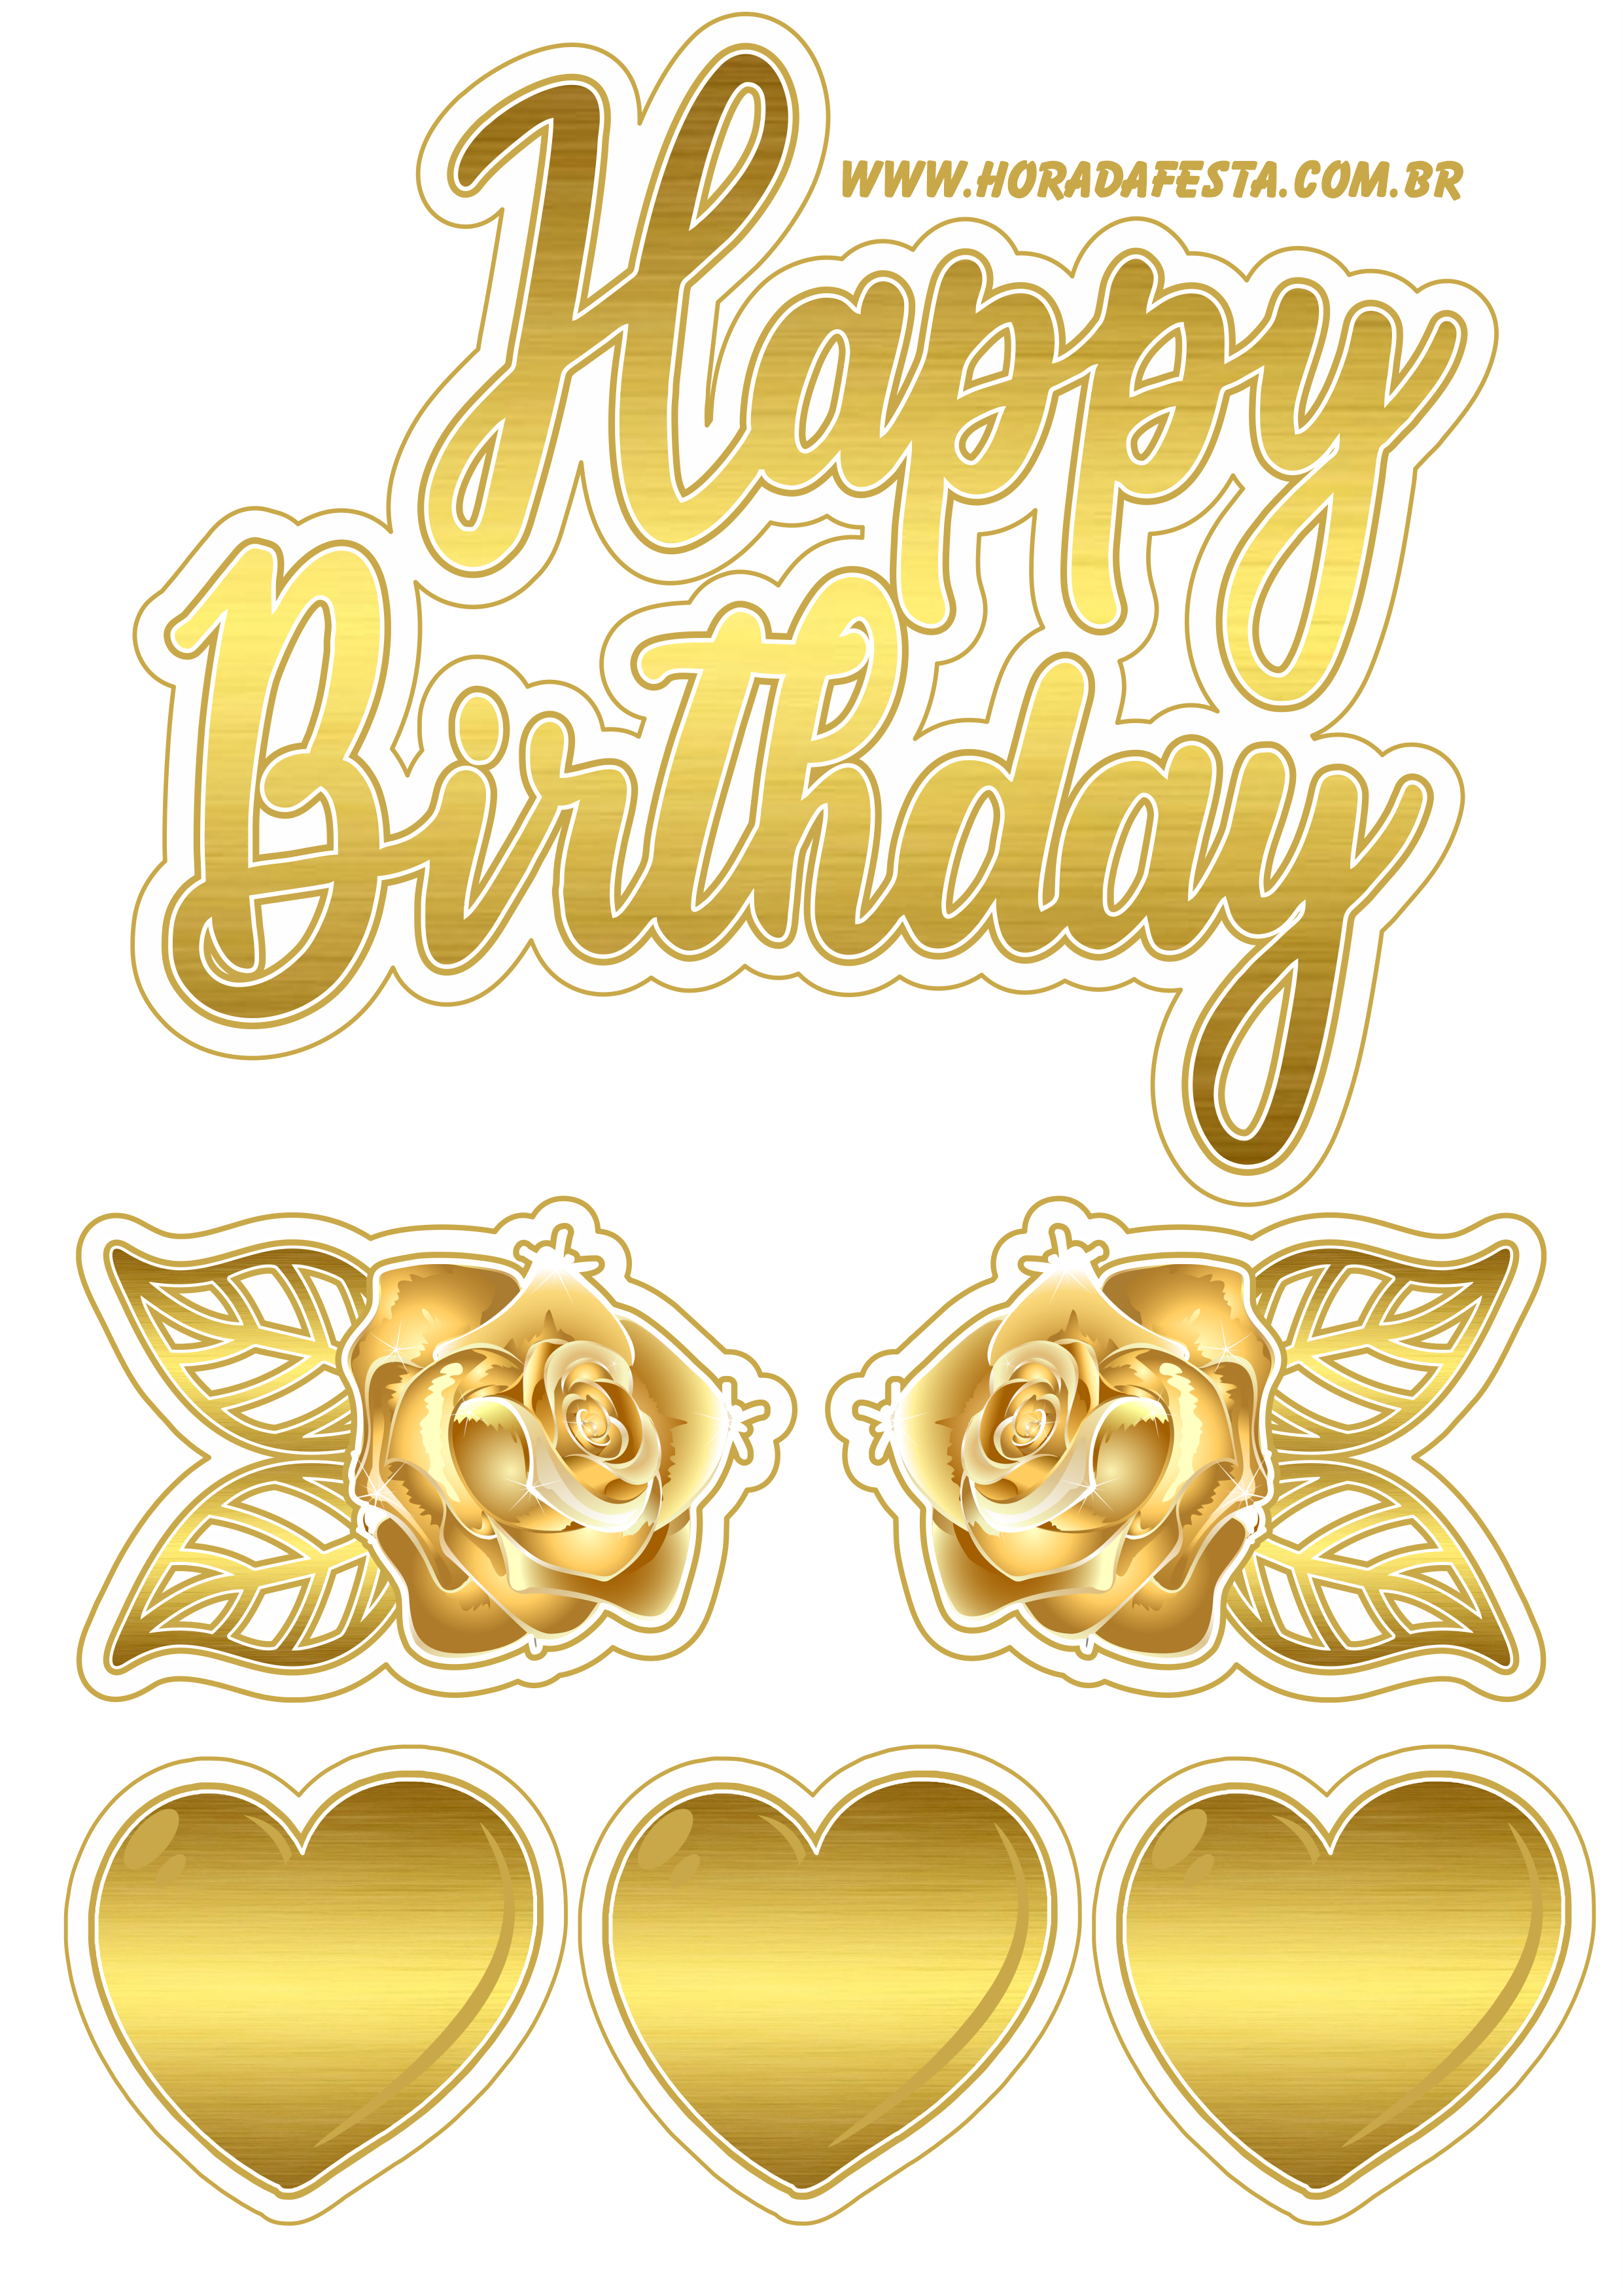 Happy Birthday baixar topo de bolo dourado com corações e flores artigos de papelaria png